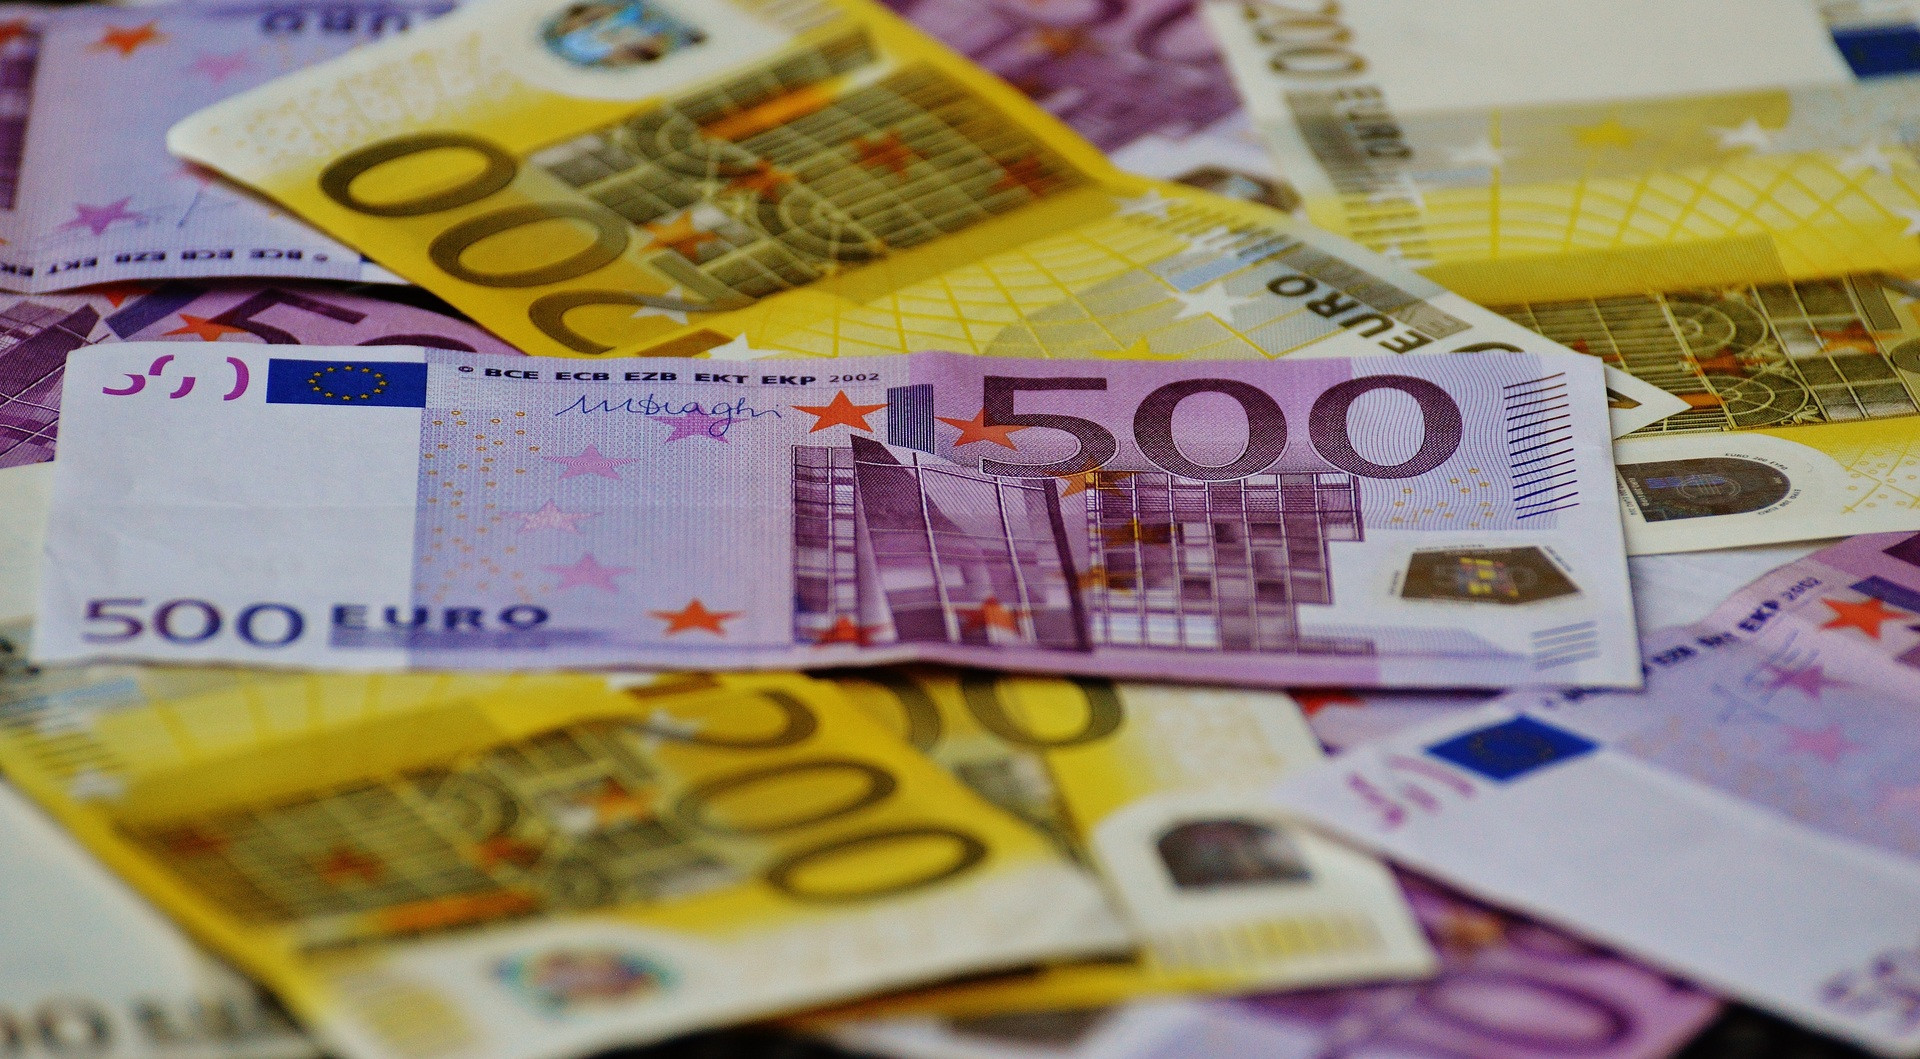 Przedstawiciele Nordea Bank twierdzą, że korona norweska zyska w najbliższych miesiącach. Prognozują, że cena euro spadnie w ciągu roku do poziomu 11,25 NOK.